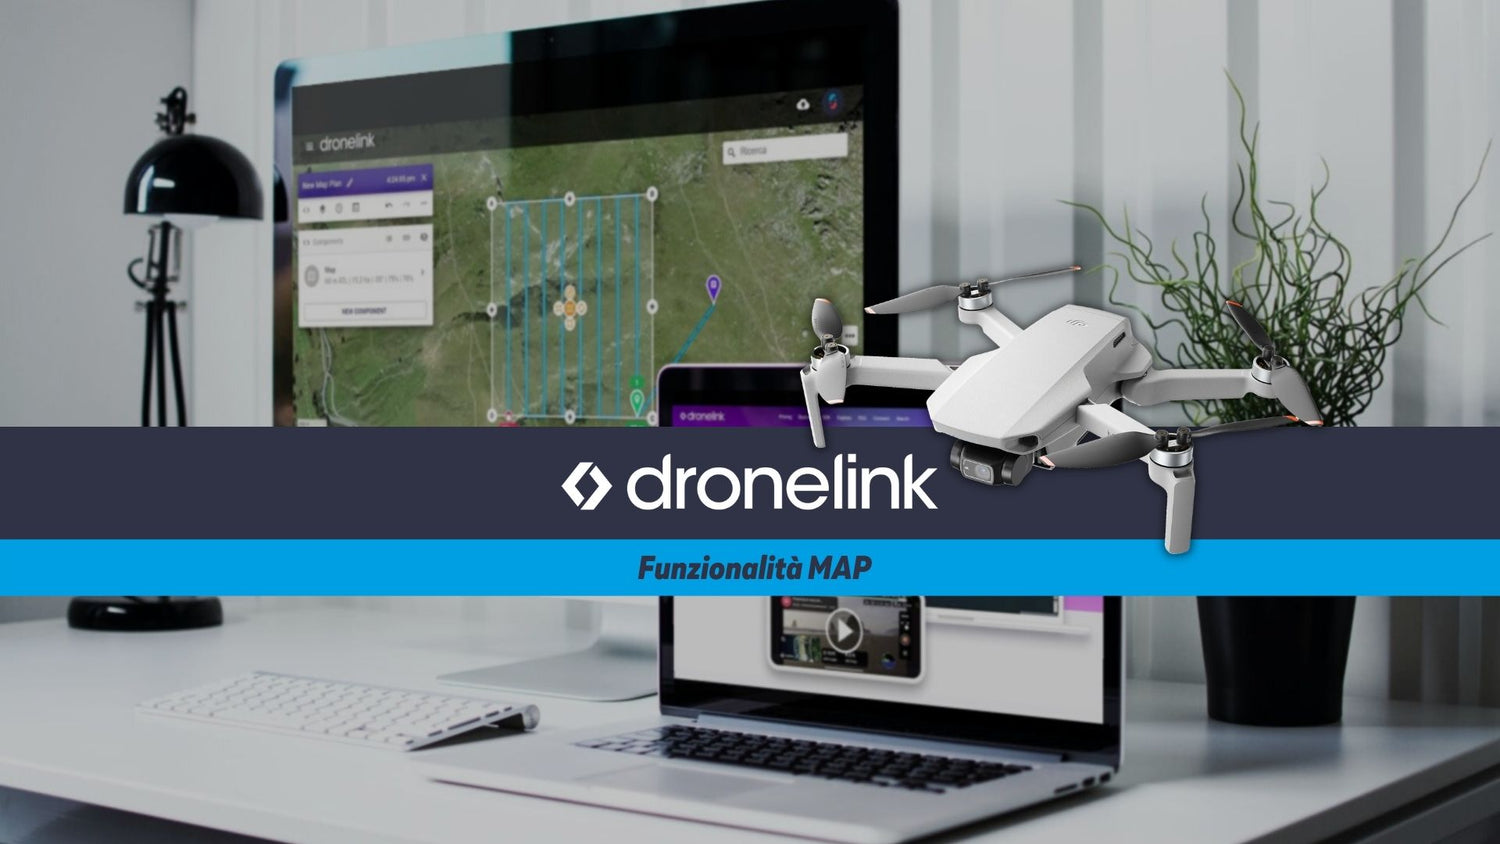 Applicazione per volo automatico con drone Dronelink e funzionalità MAP